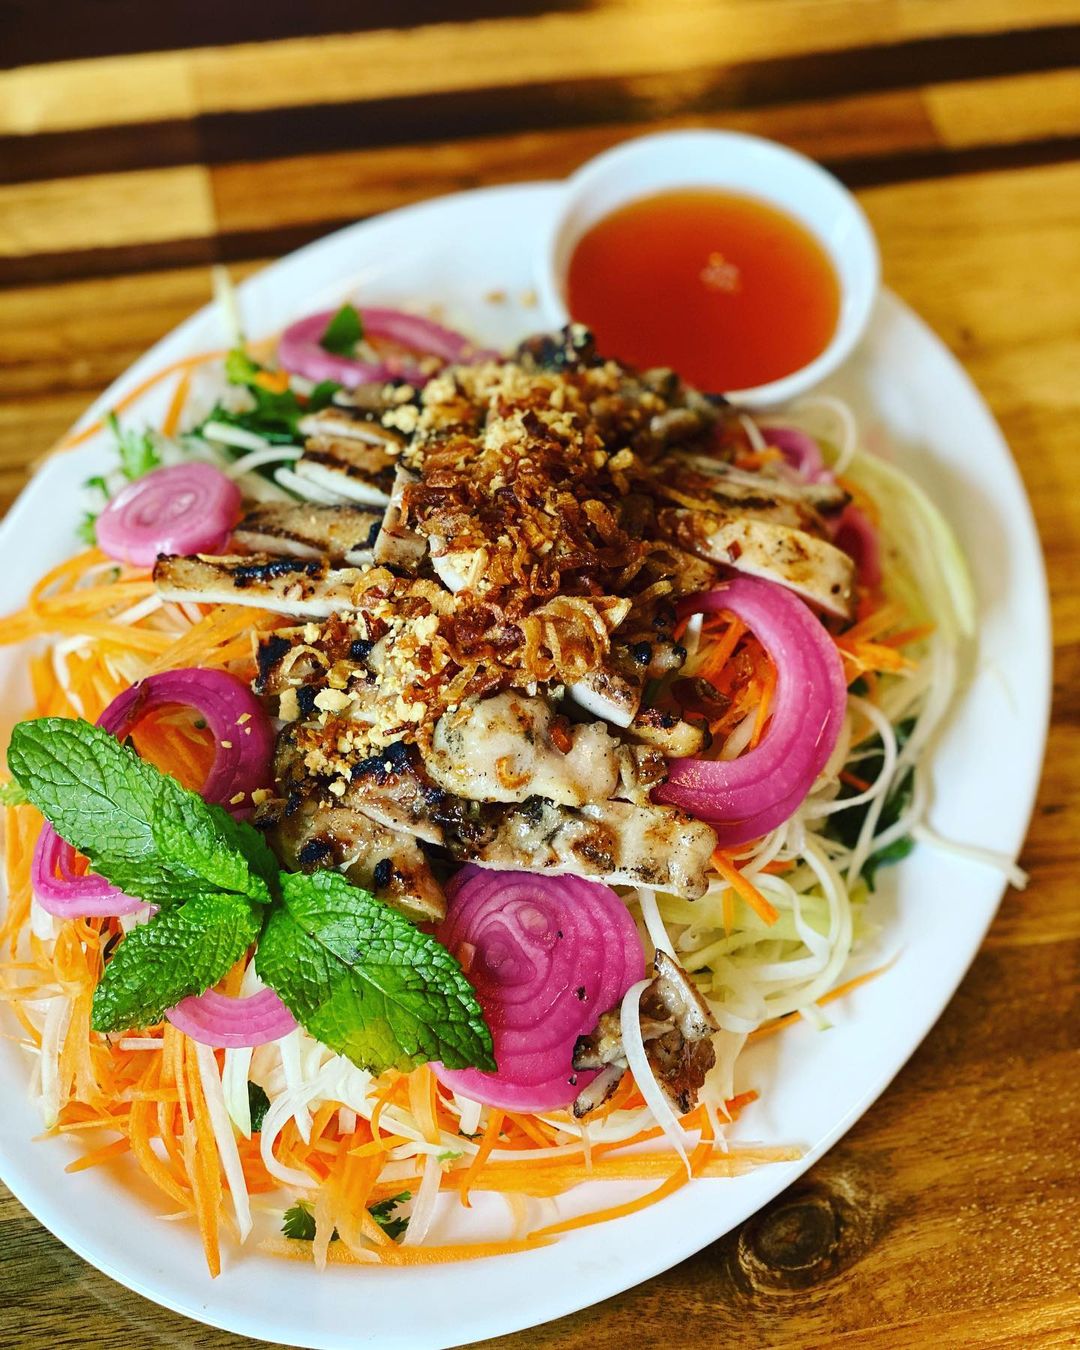 Vietnamese salad